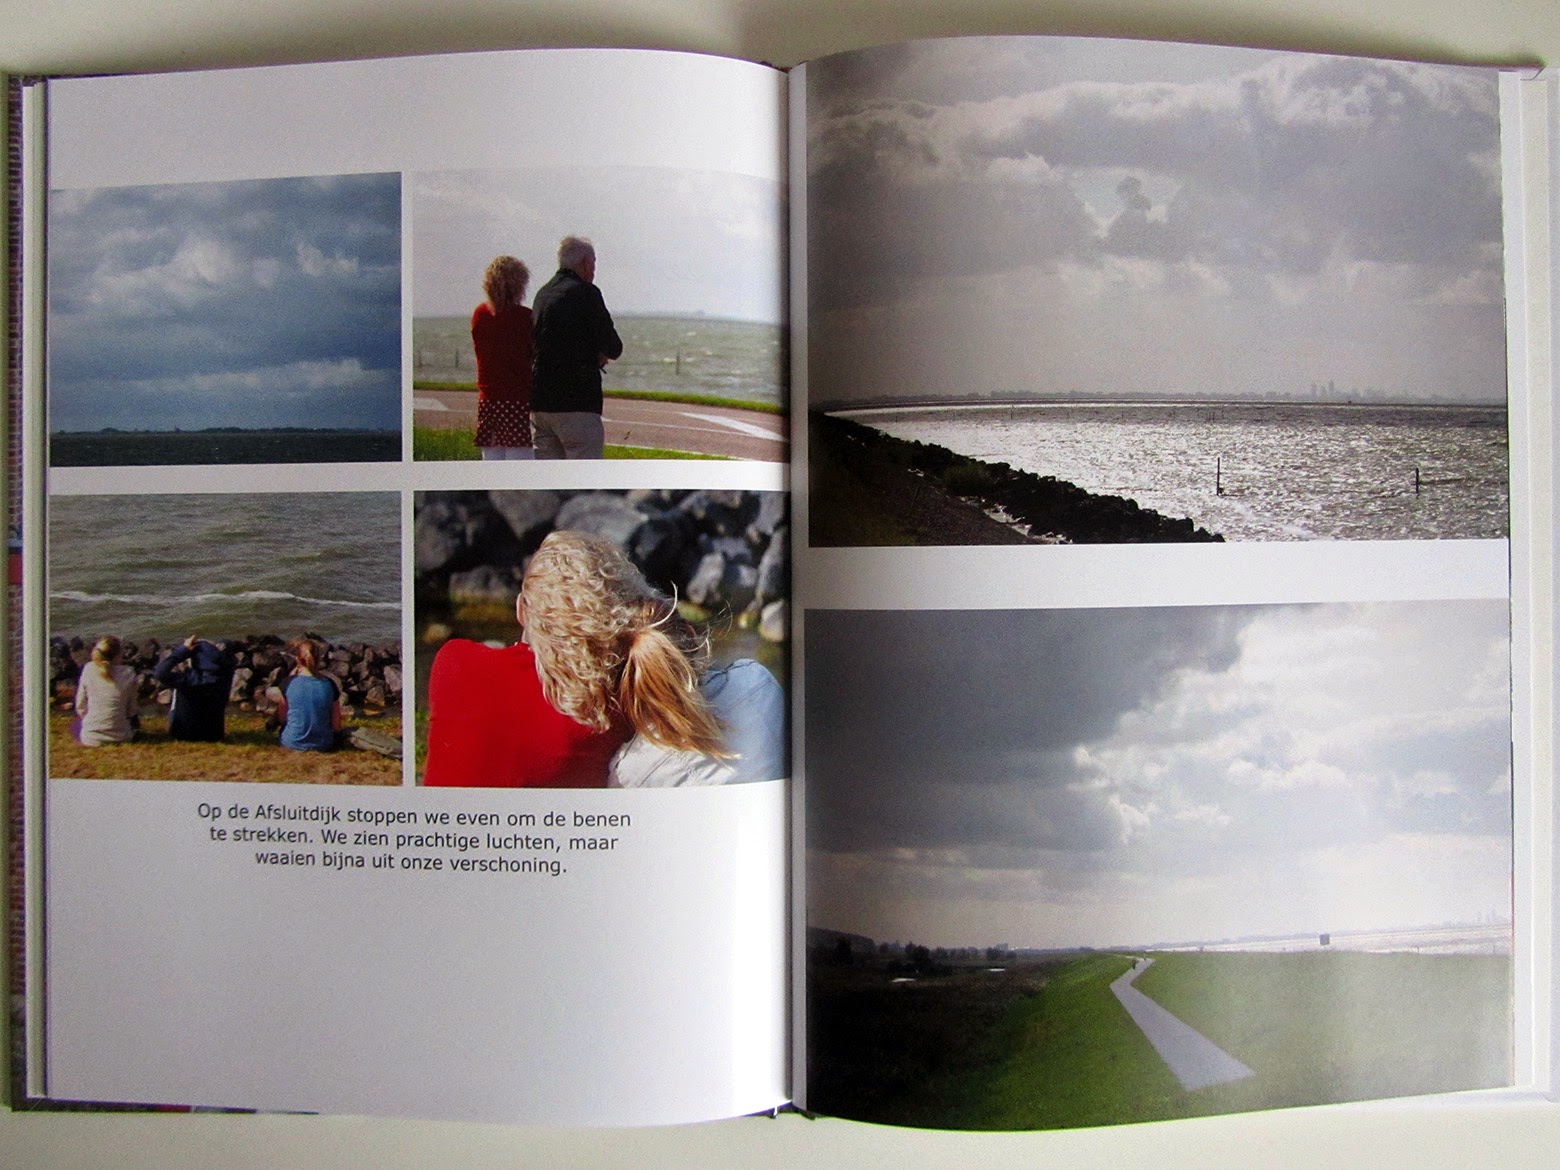 visit to Afsluitdijk